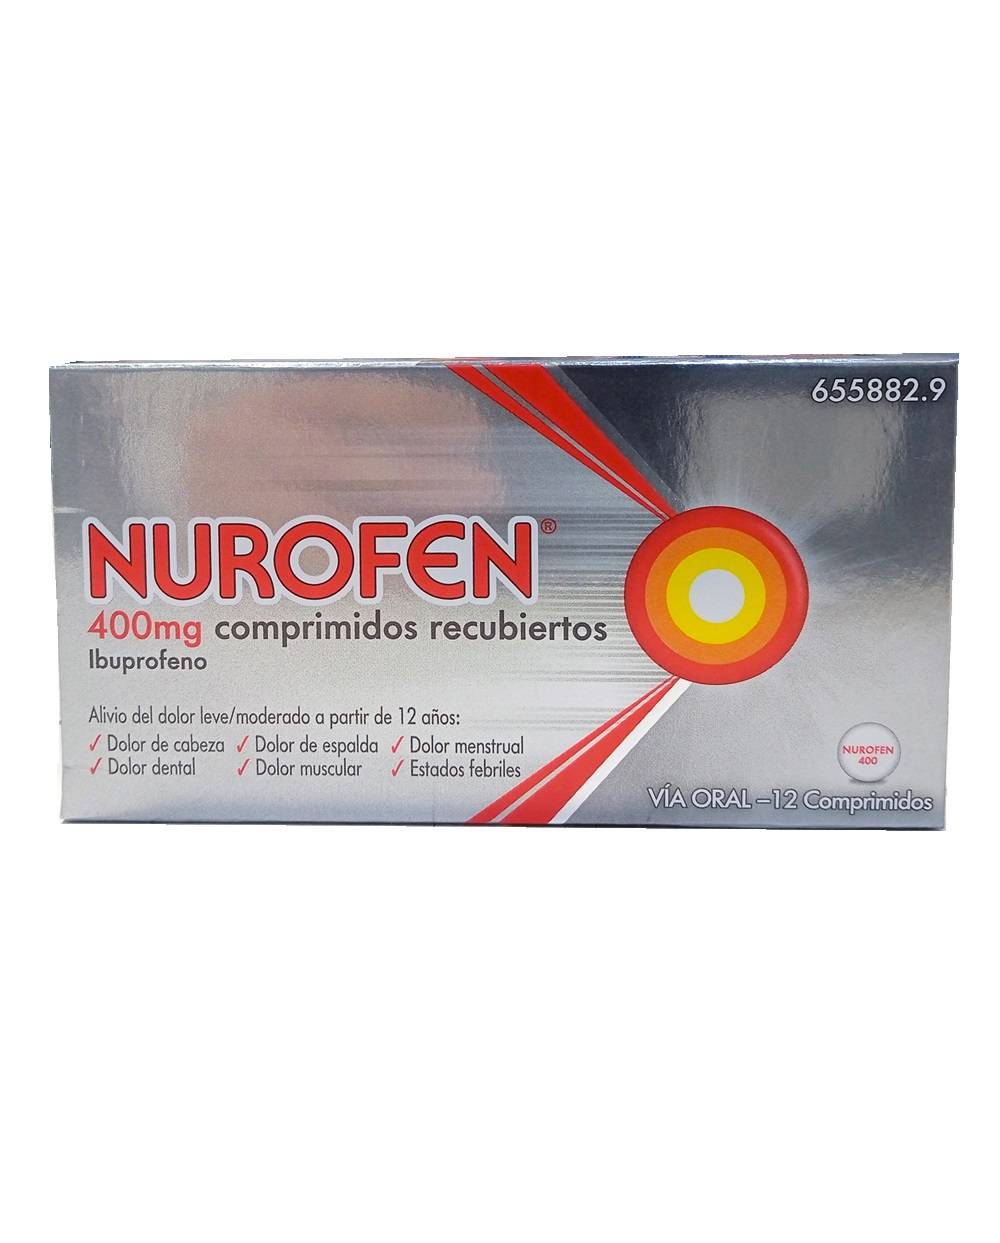 Nurofen 400 mg - 12 comprimidos